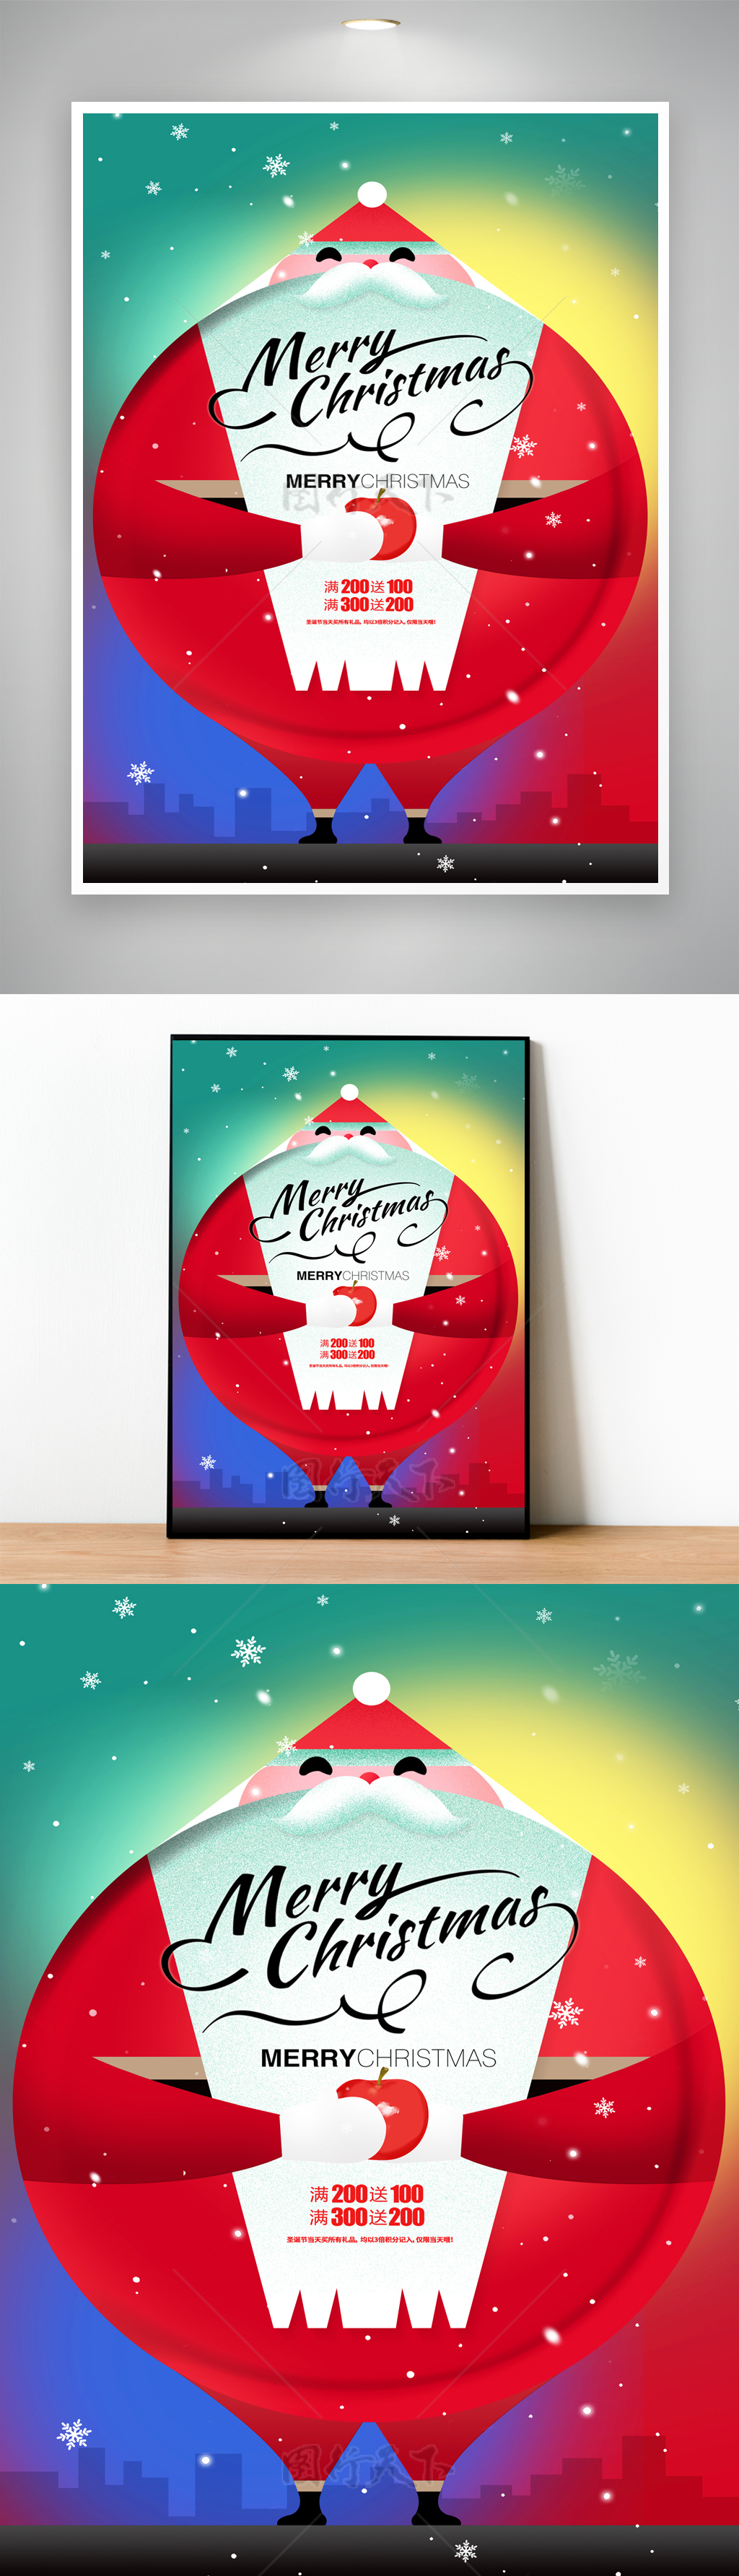 创意圣诞节营销海报设计